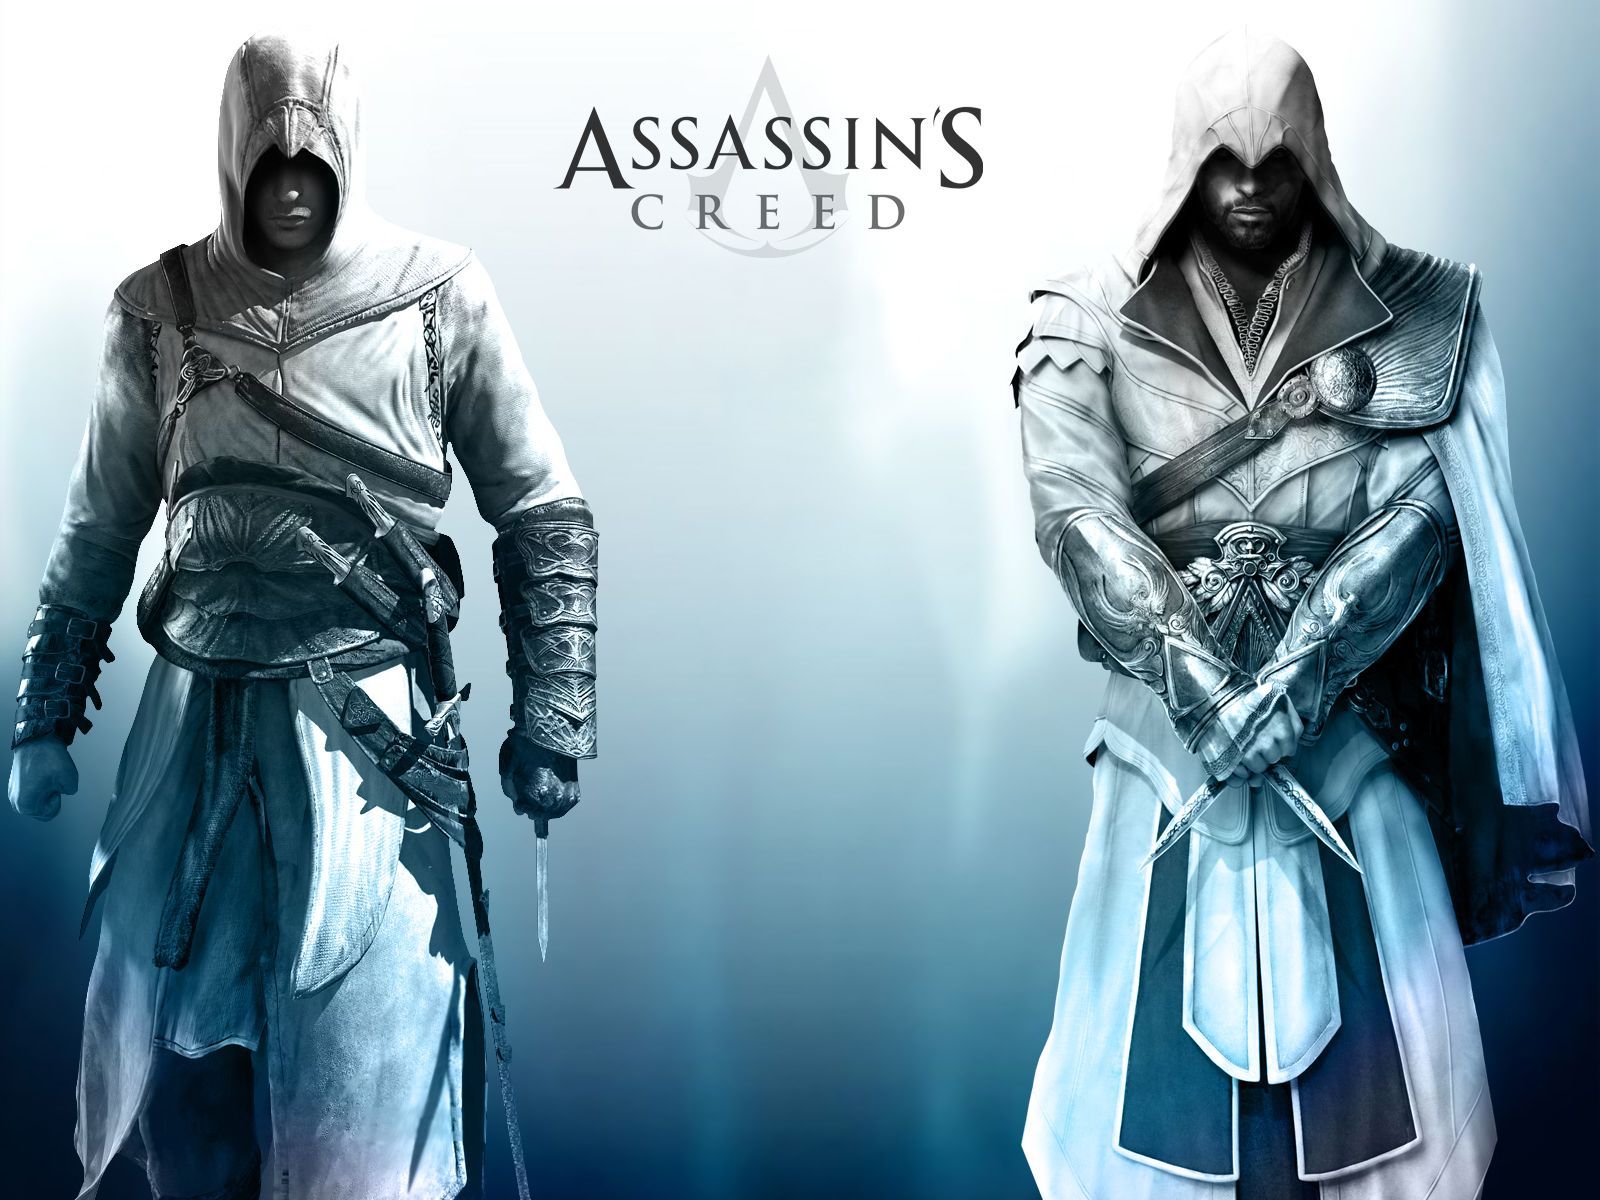 Two Legends - The Assassin's Wallpaper (32617412) - Fanpop